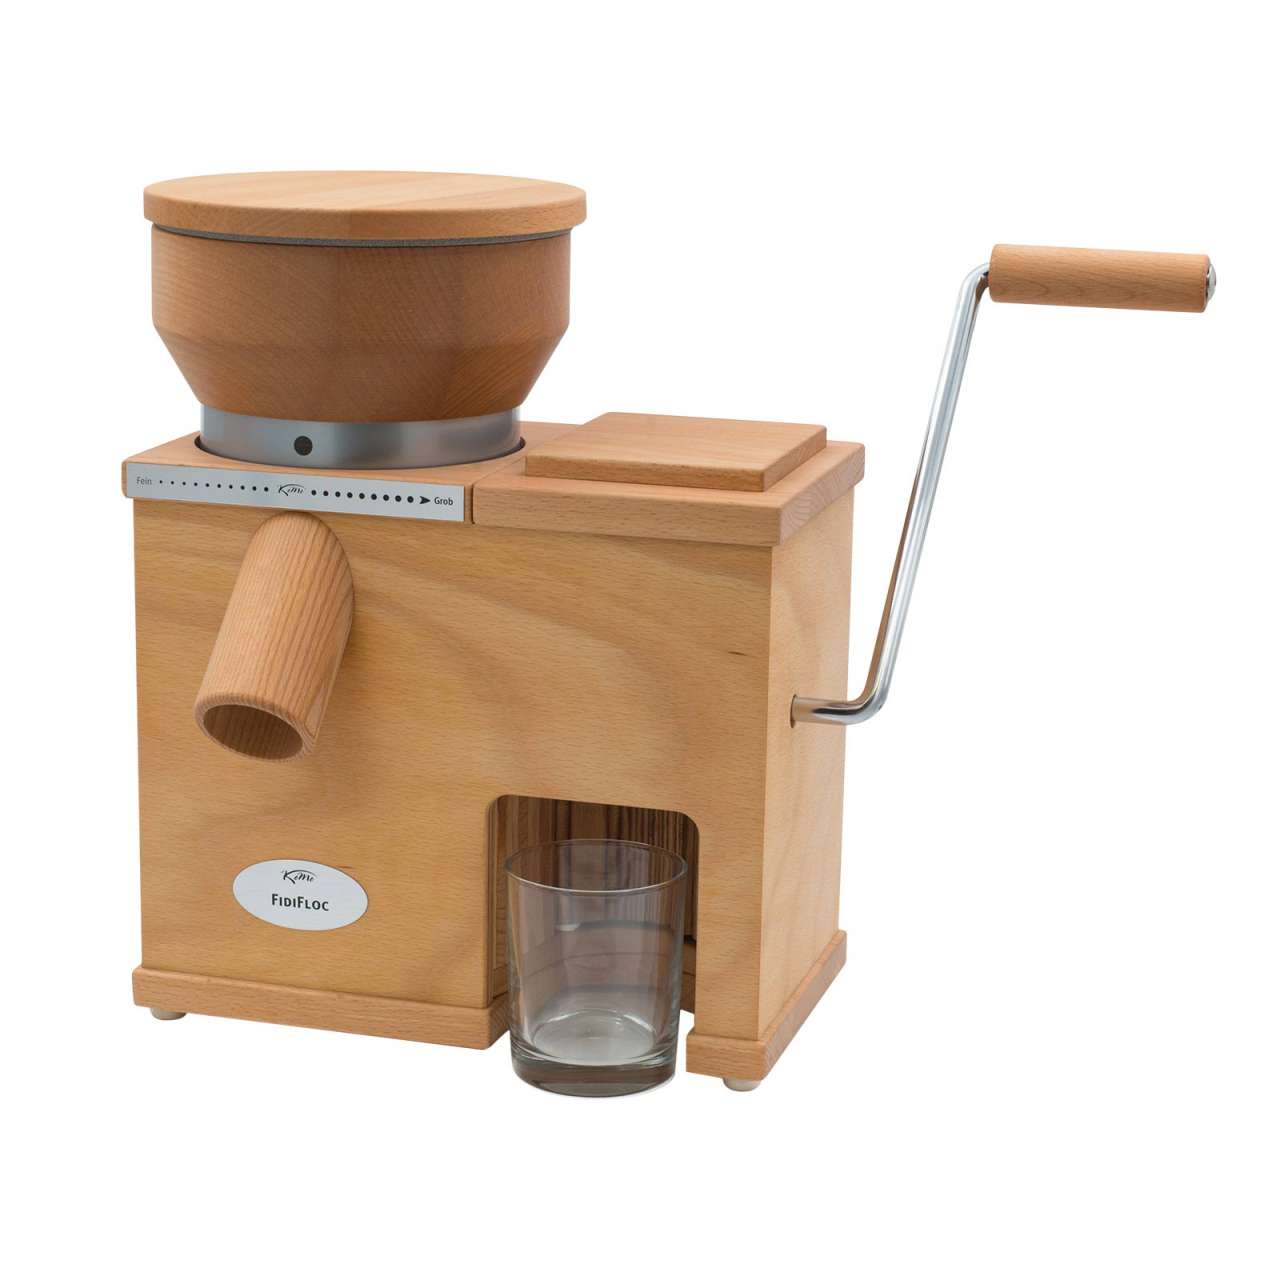 KoMo Getreidemühle Holz Fidifloc 21 – elektrische Mühle mit Handflocker